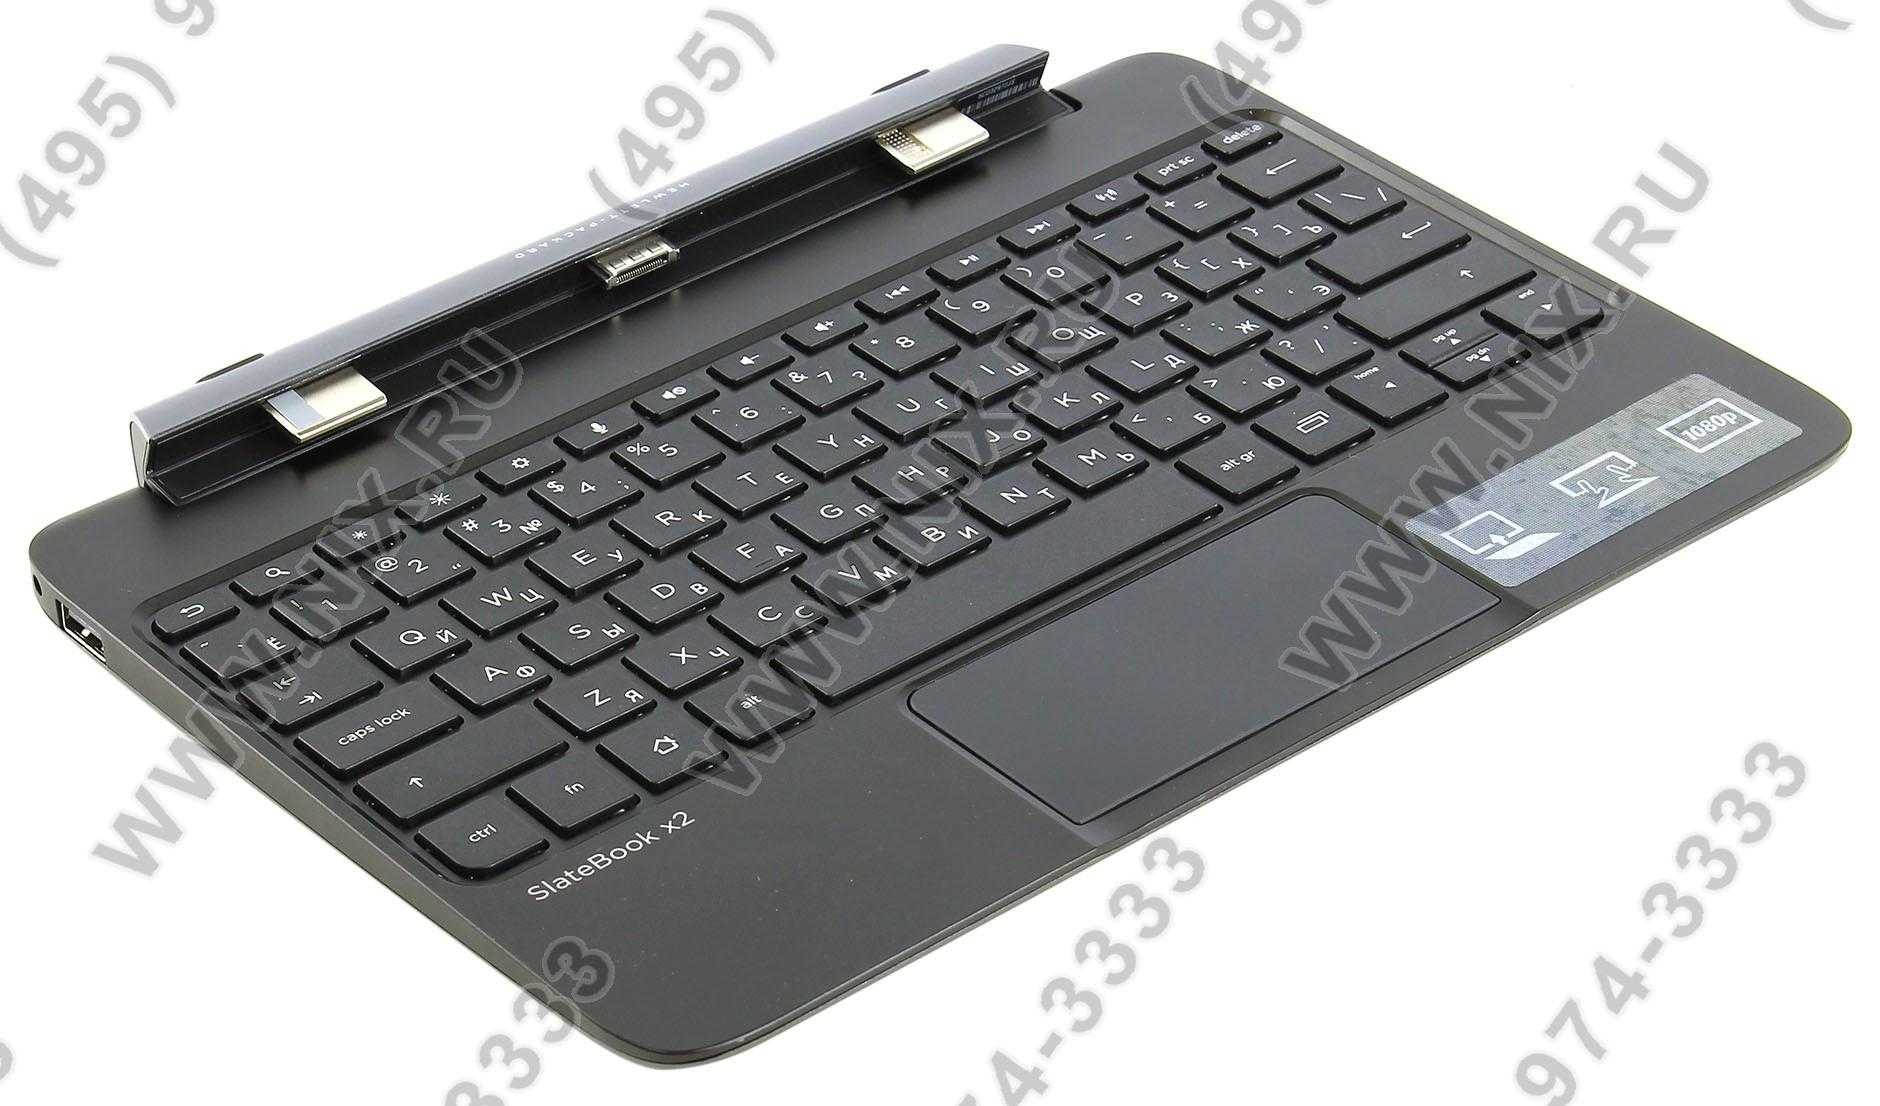 Замена экрана планшета hp slatebook x2 10-h001er — купить, цена и характеристики, отзывы